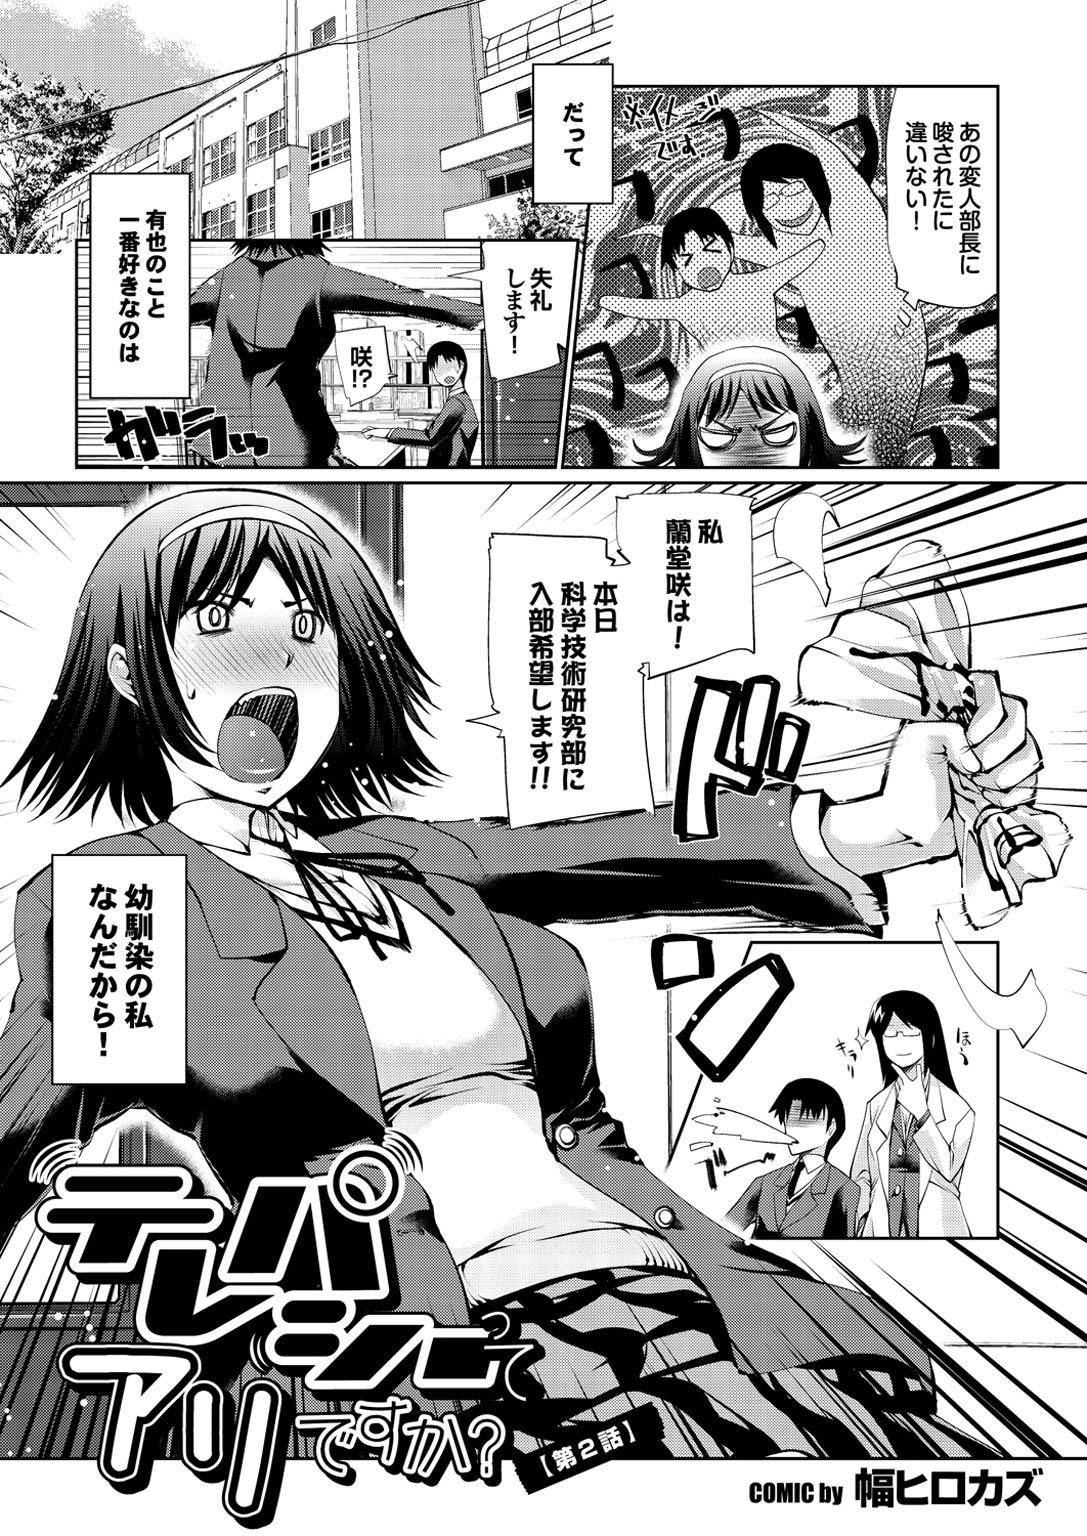 Otona Gokko kono JK Comic ga Sugoi! Vol. 2 123